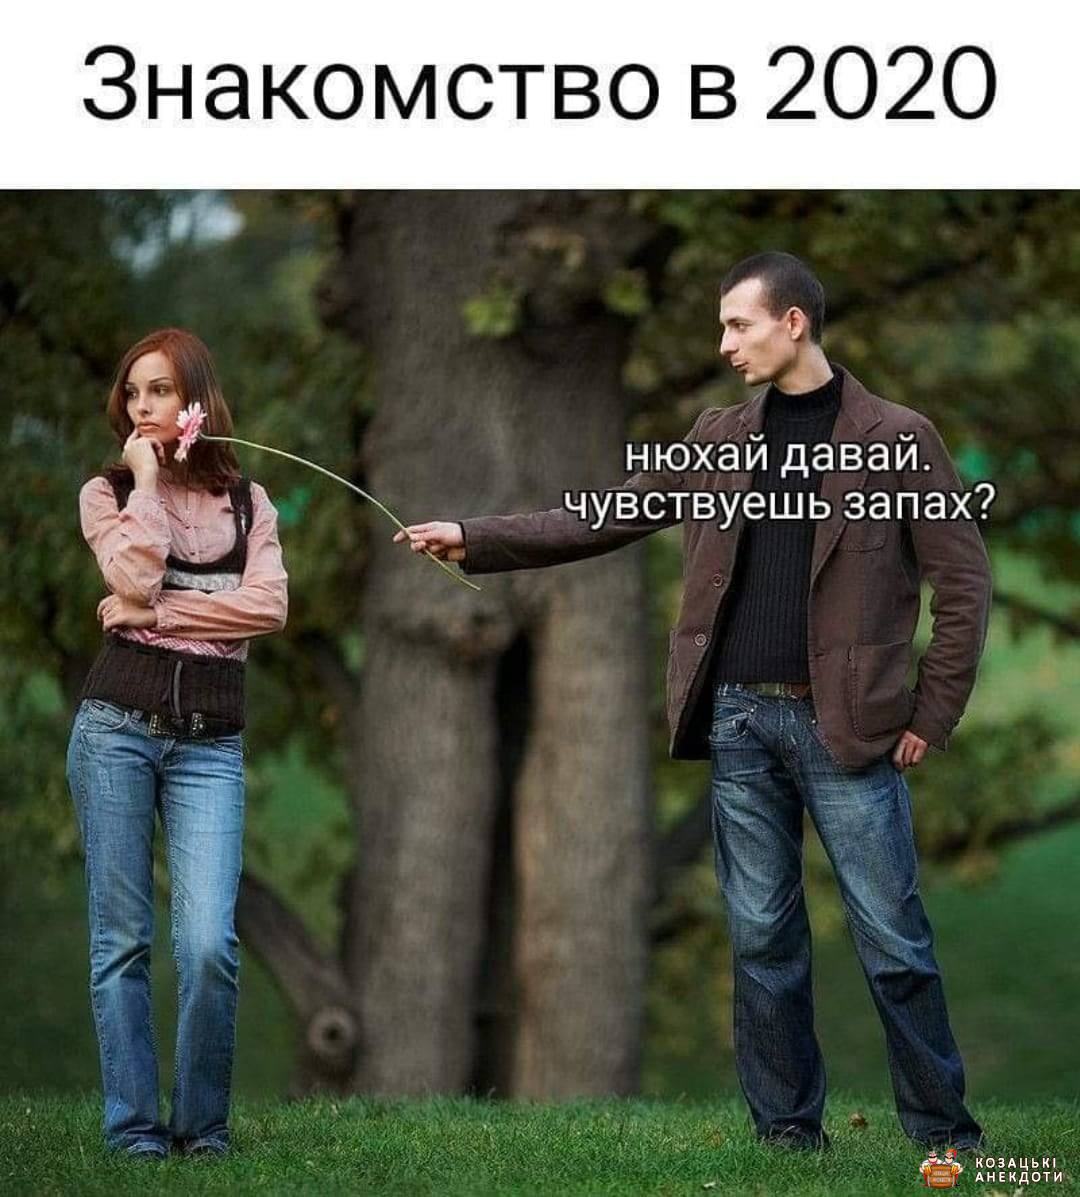 Знайомство в 2020 році